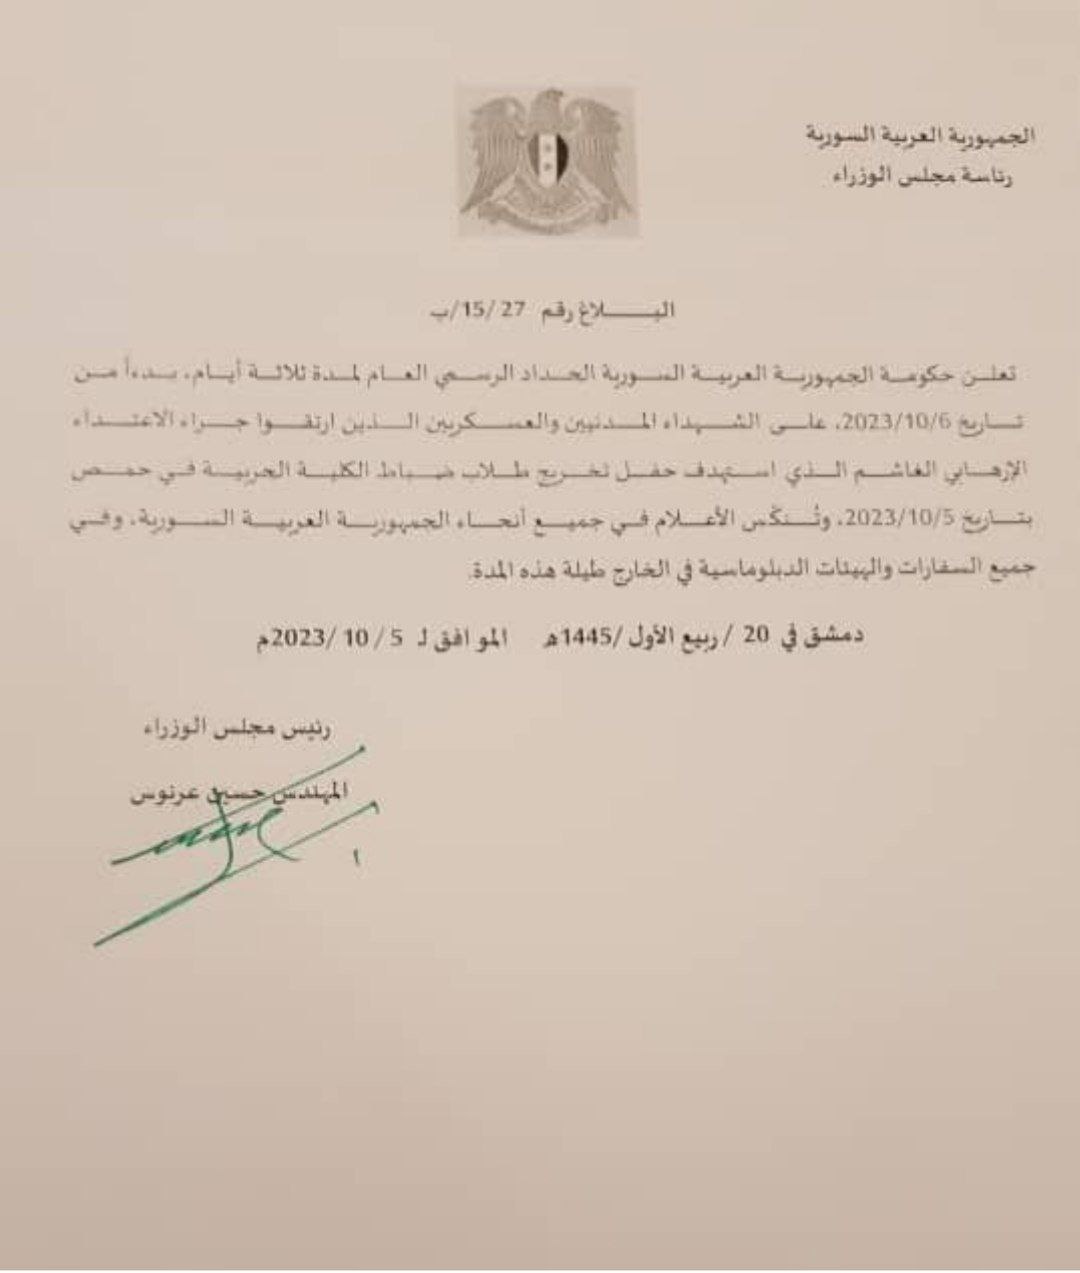 الحكومة السورية تعلن الحداد العام لمدة 3 أيام